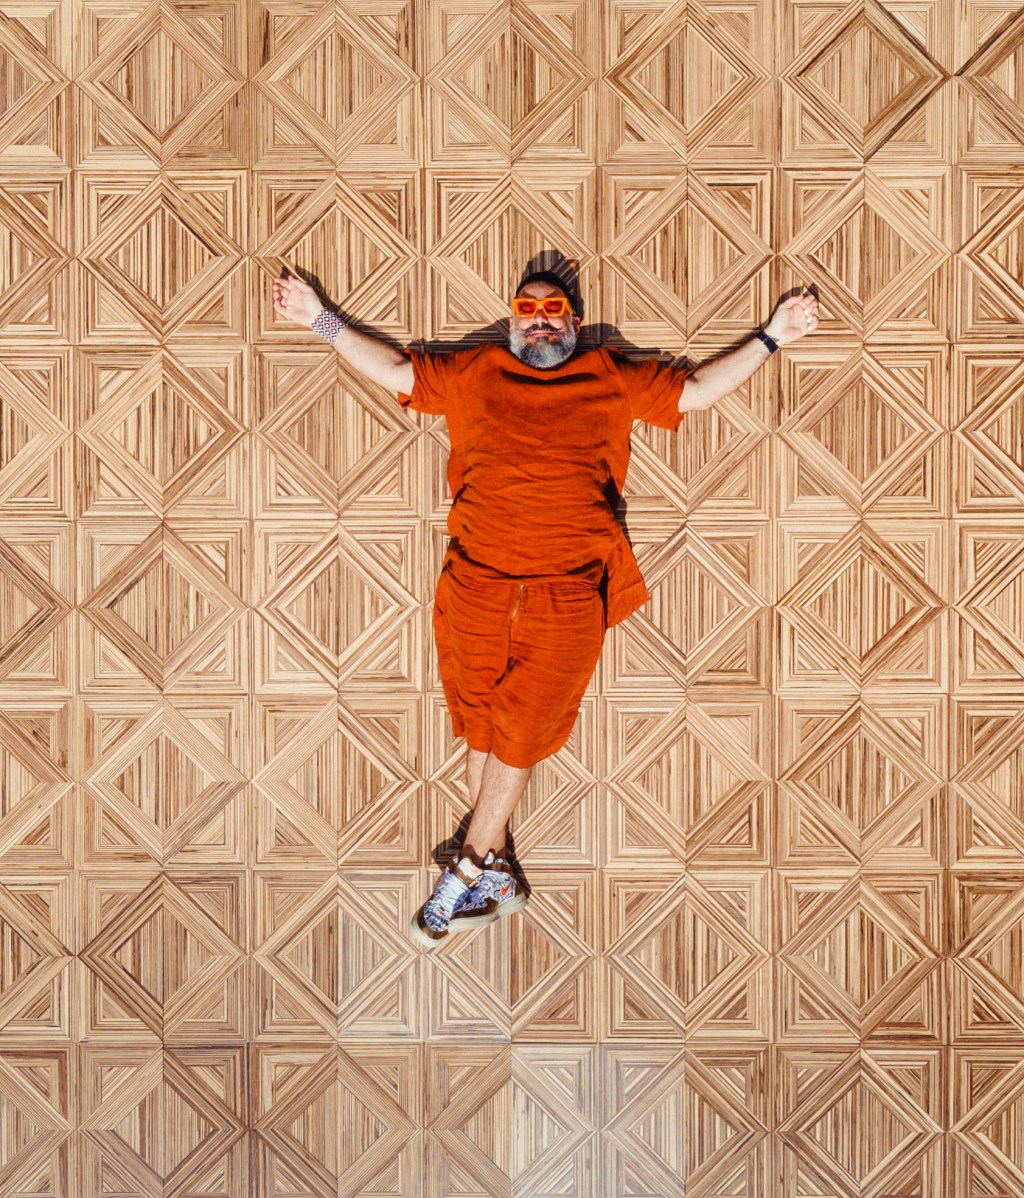 Pedro Franco lança piso de madeira inspirado nas raízes brasileiras